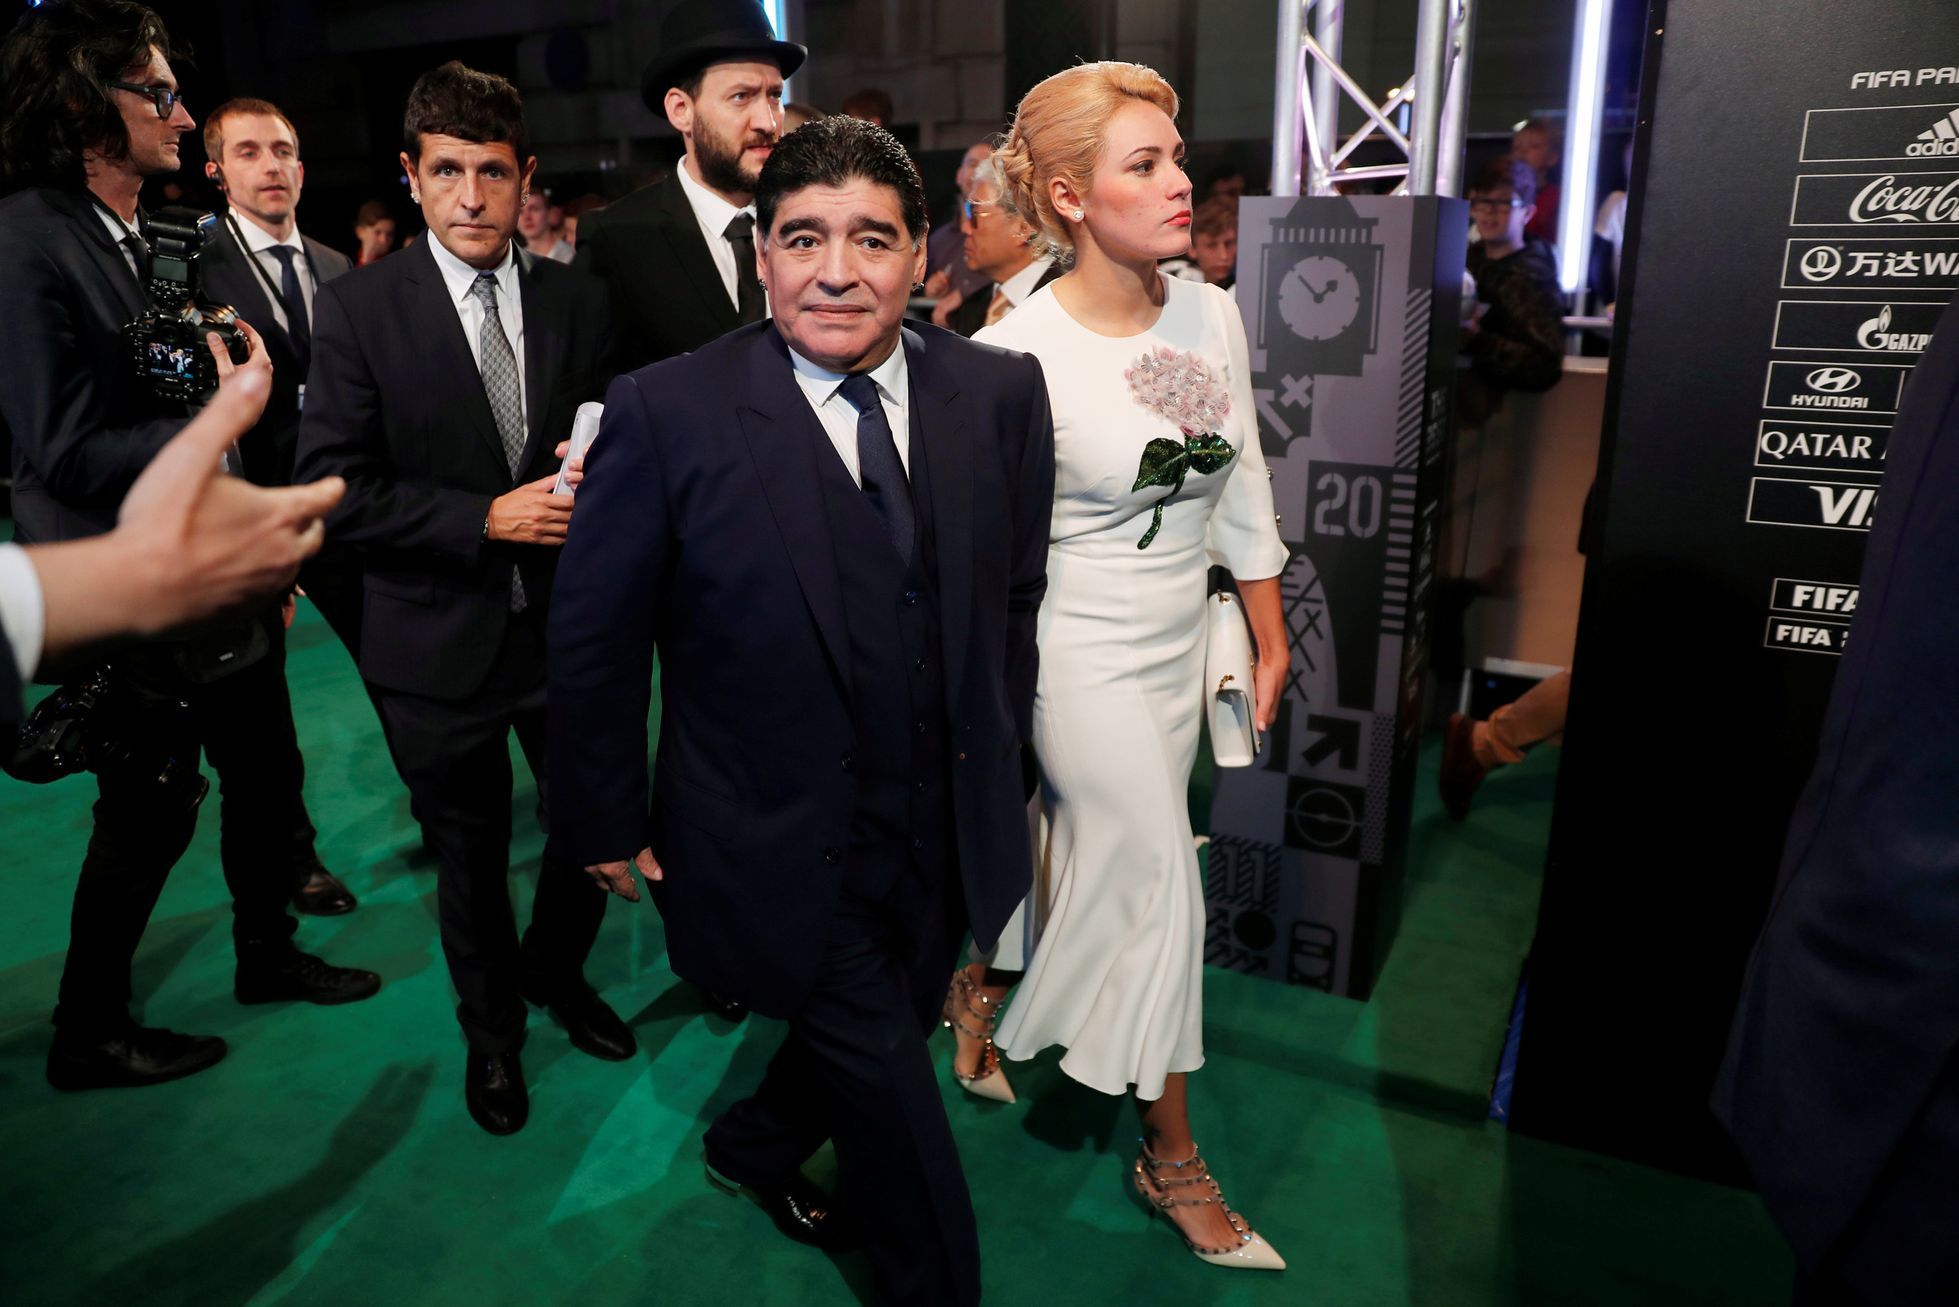 Diego Maradona a manželka Rocio Oliva